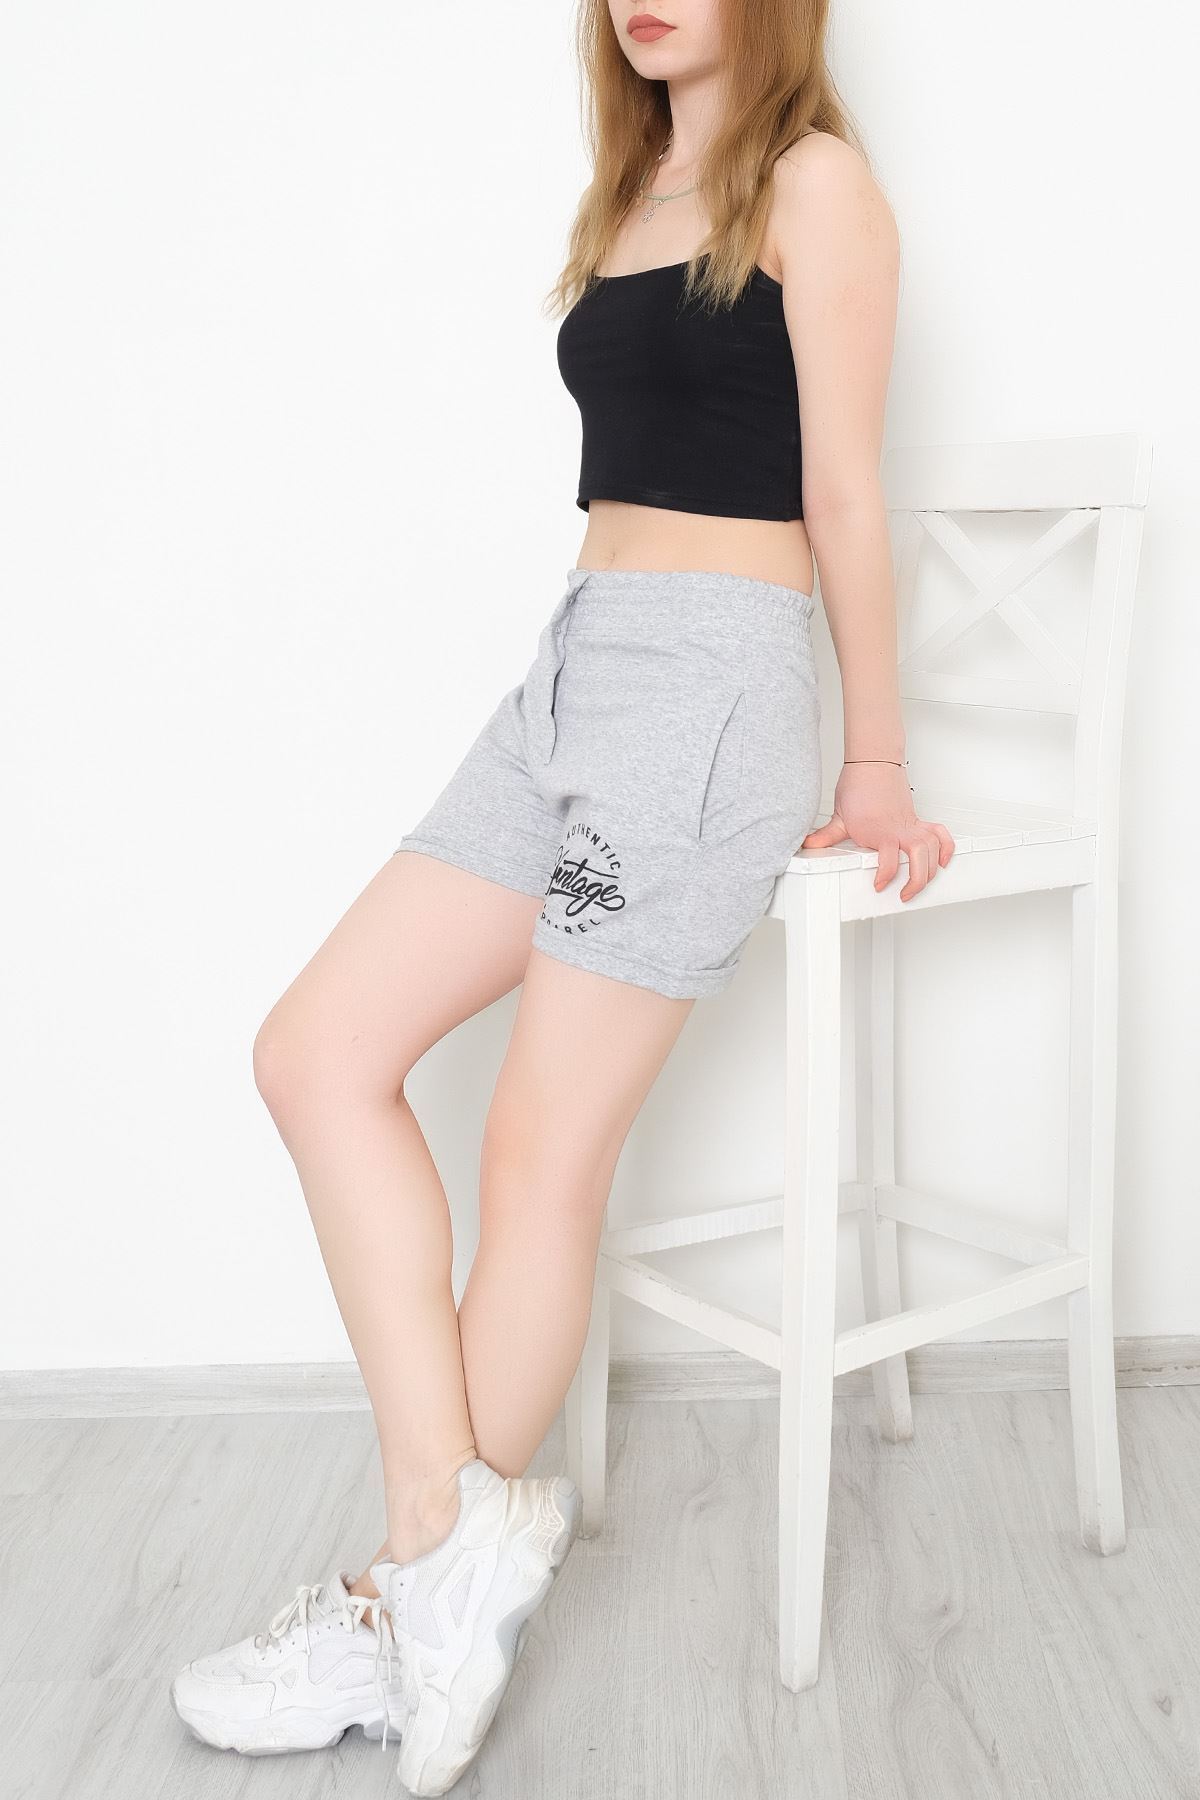 A model wears HAV11708 - Front Printed Snap Snap Shorts Gray - 330183.1608., wholesale Shorts of Helin Avşar to display at Lonca